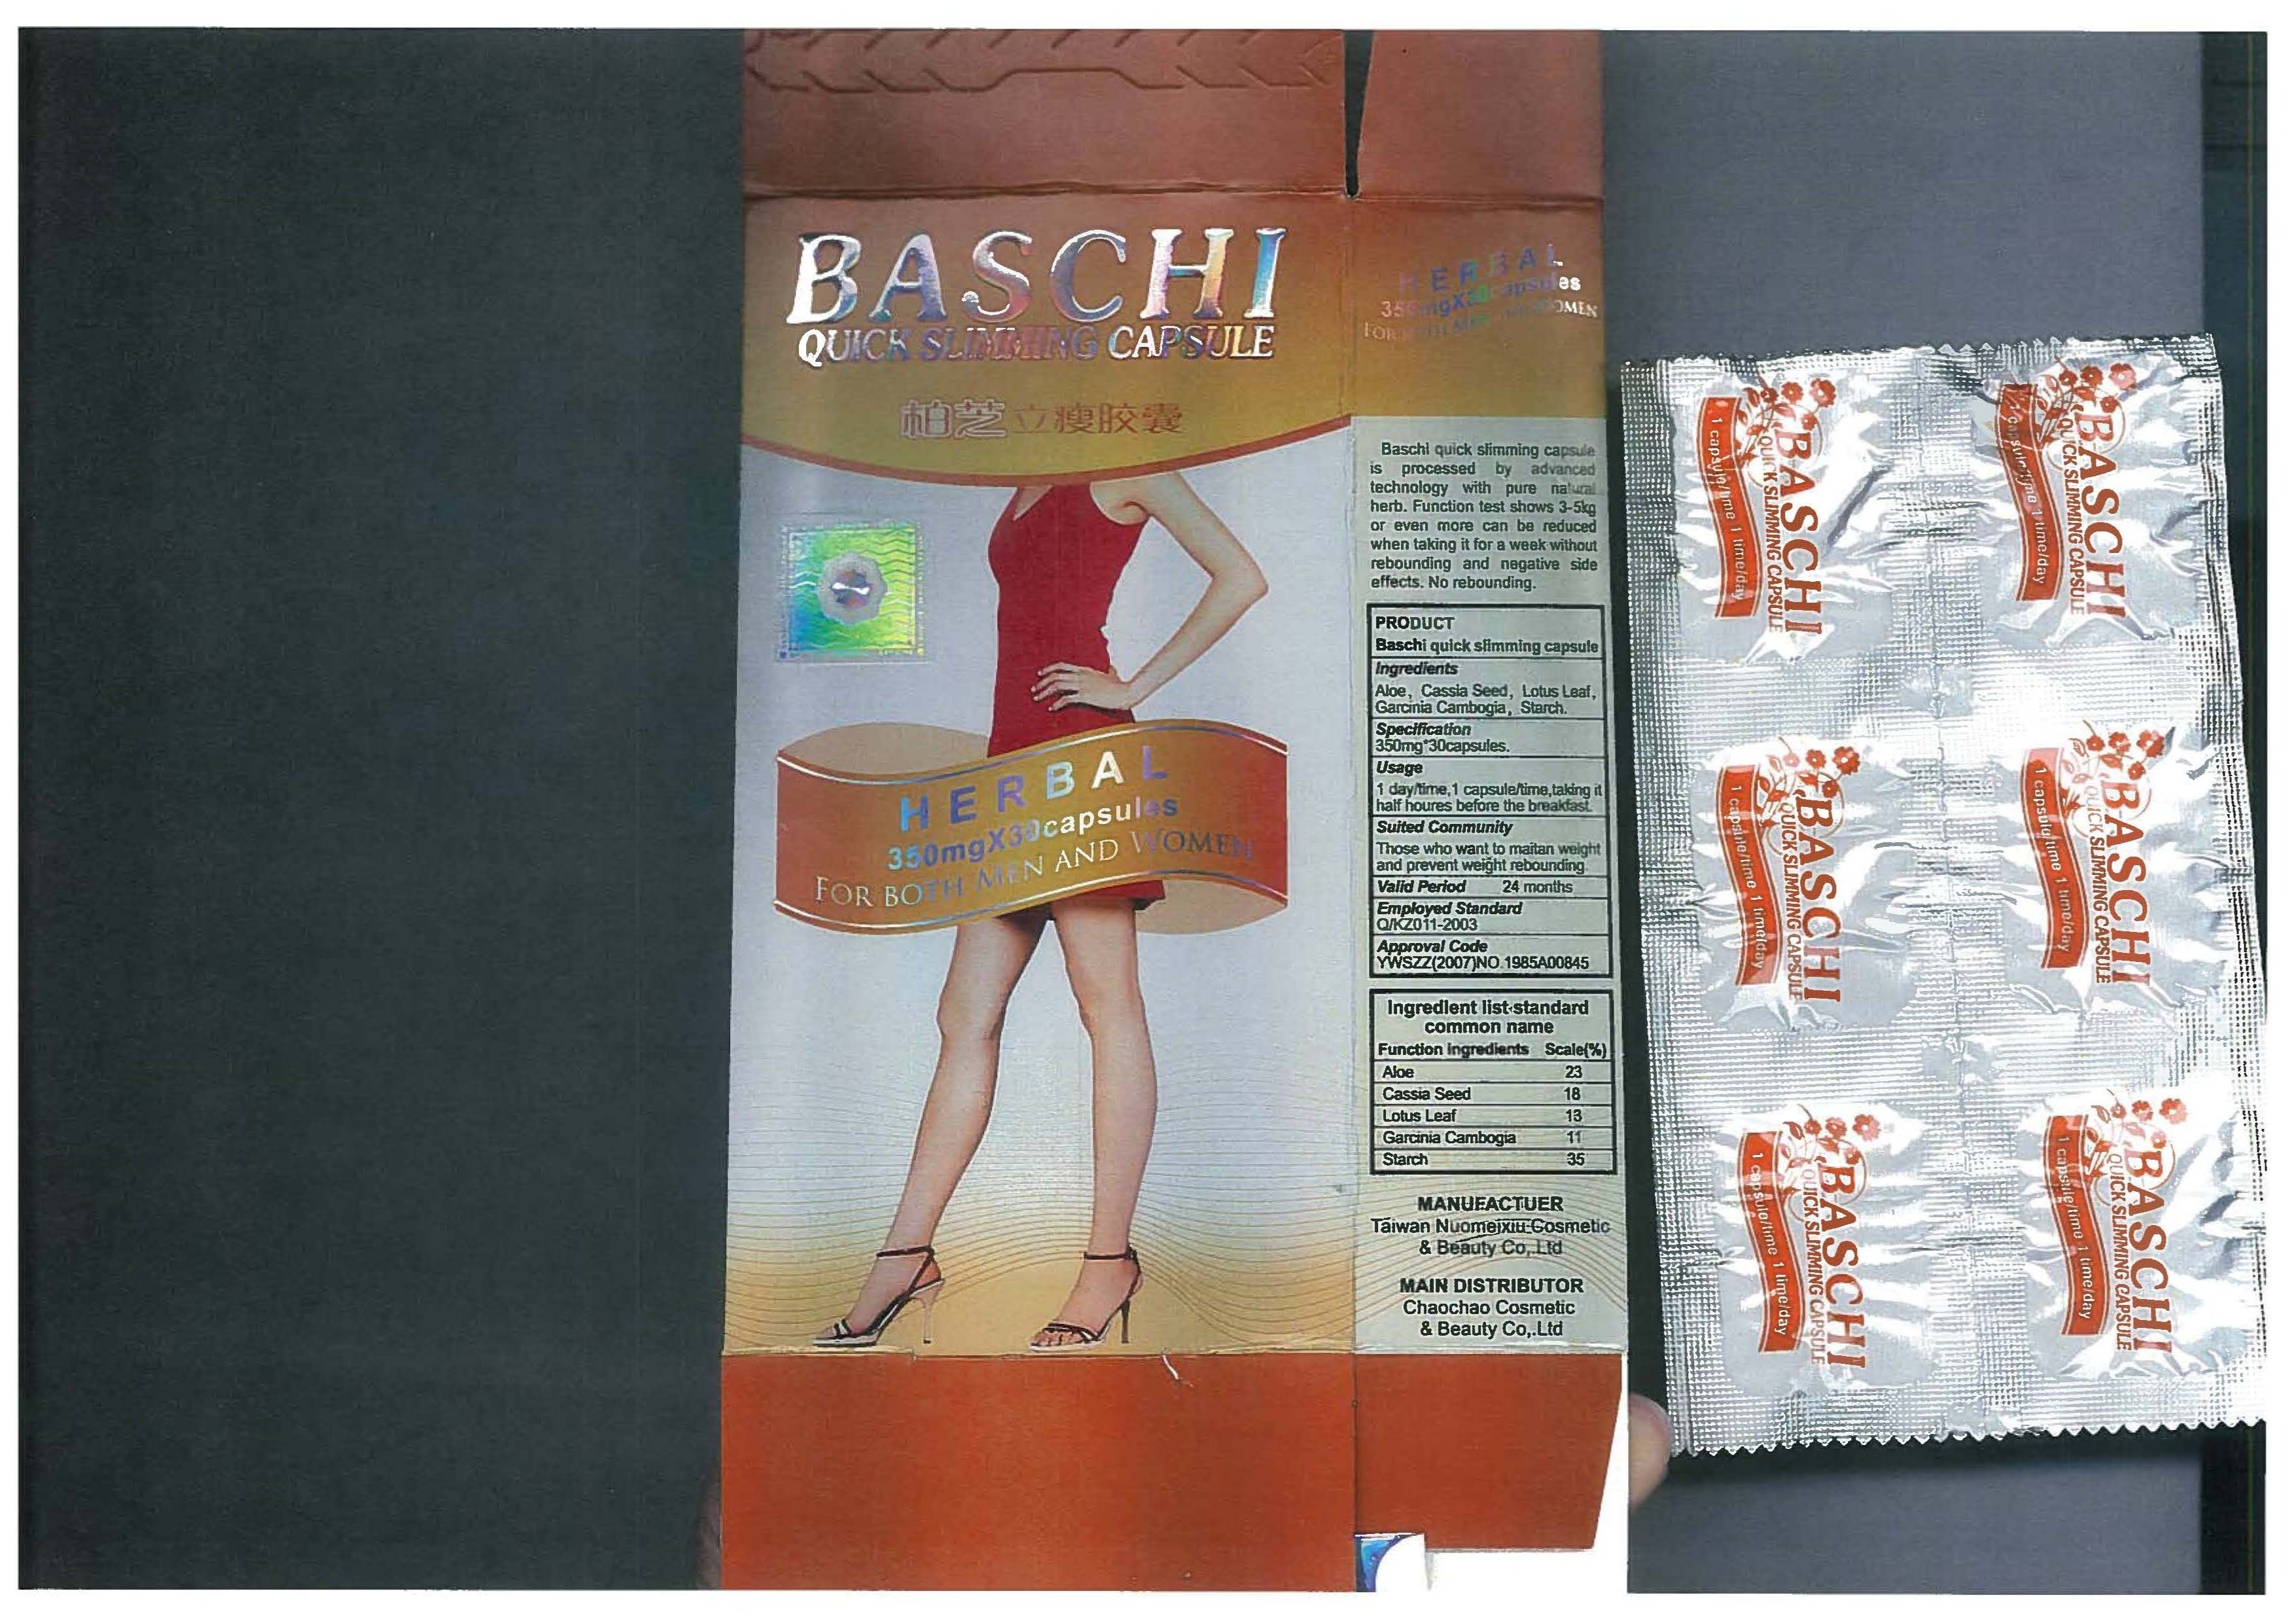 Billede af det ulovlige produkt: Baschi Quick Slimming Capsules